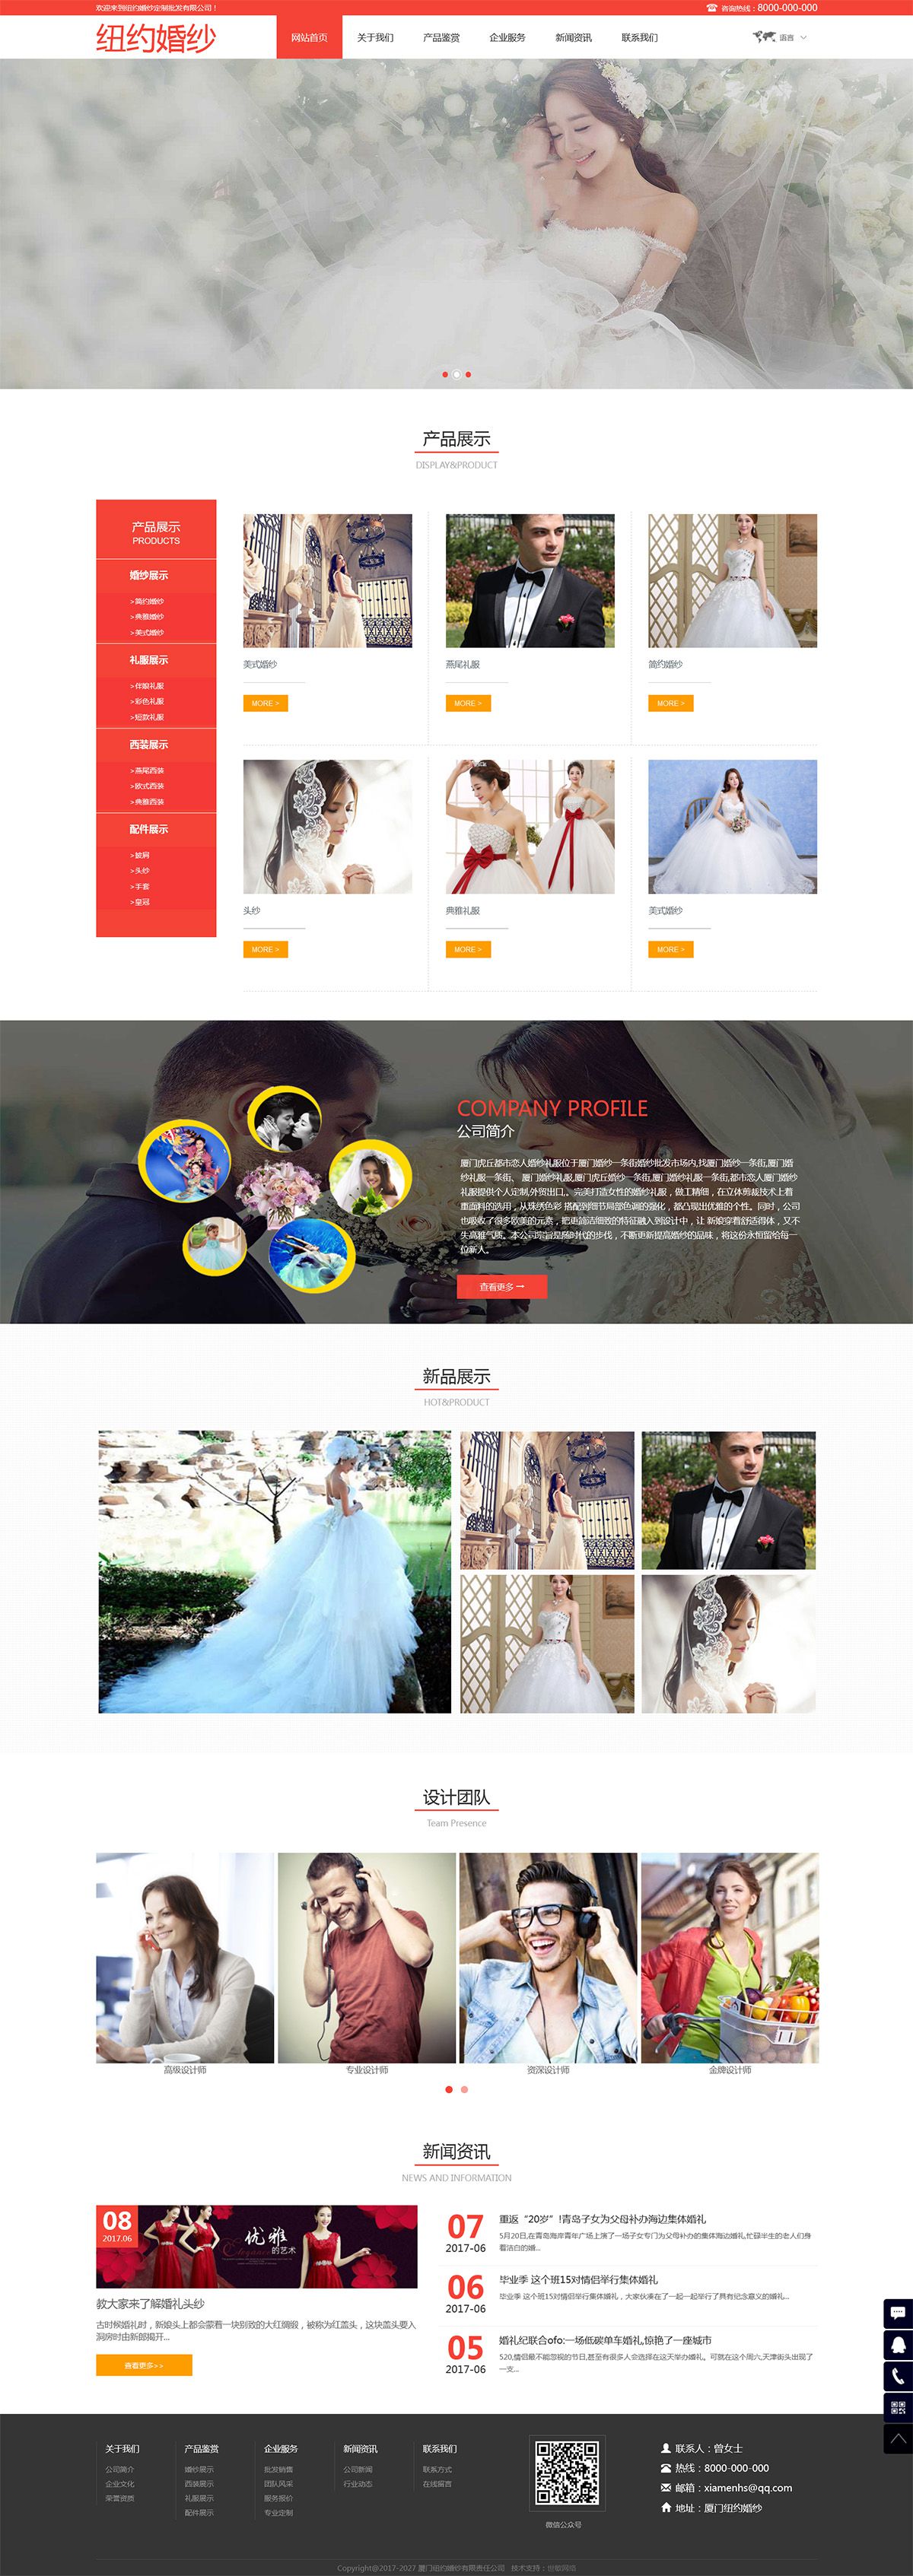 双语纽约婚纱双语响应式网站模板